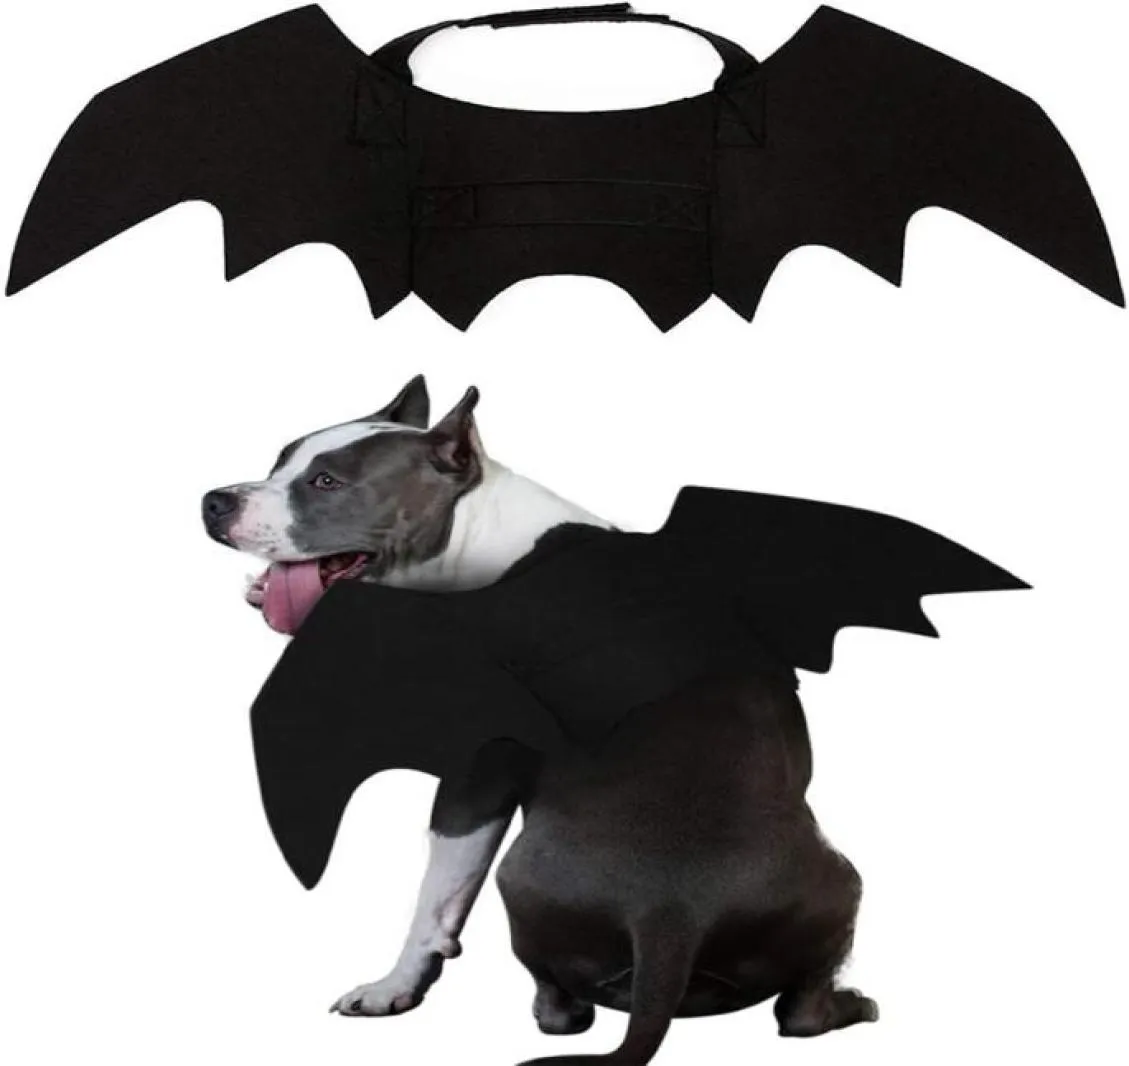 Psa odzież Pet Cat Bat Wings Halloween Cosplay BATS Costume Pets Ubrania dla kotów Kittame Puppy Małe średnie duże psy A971151205